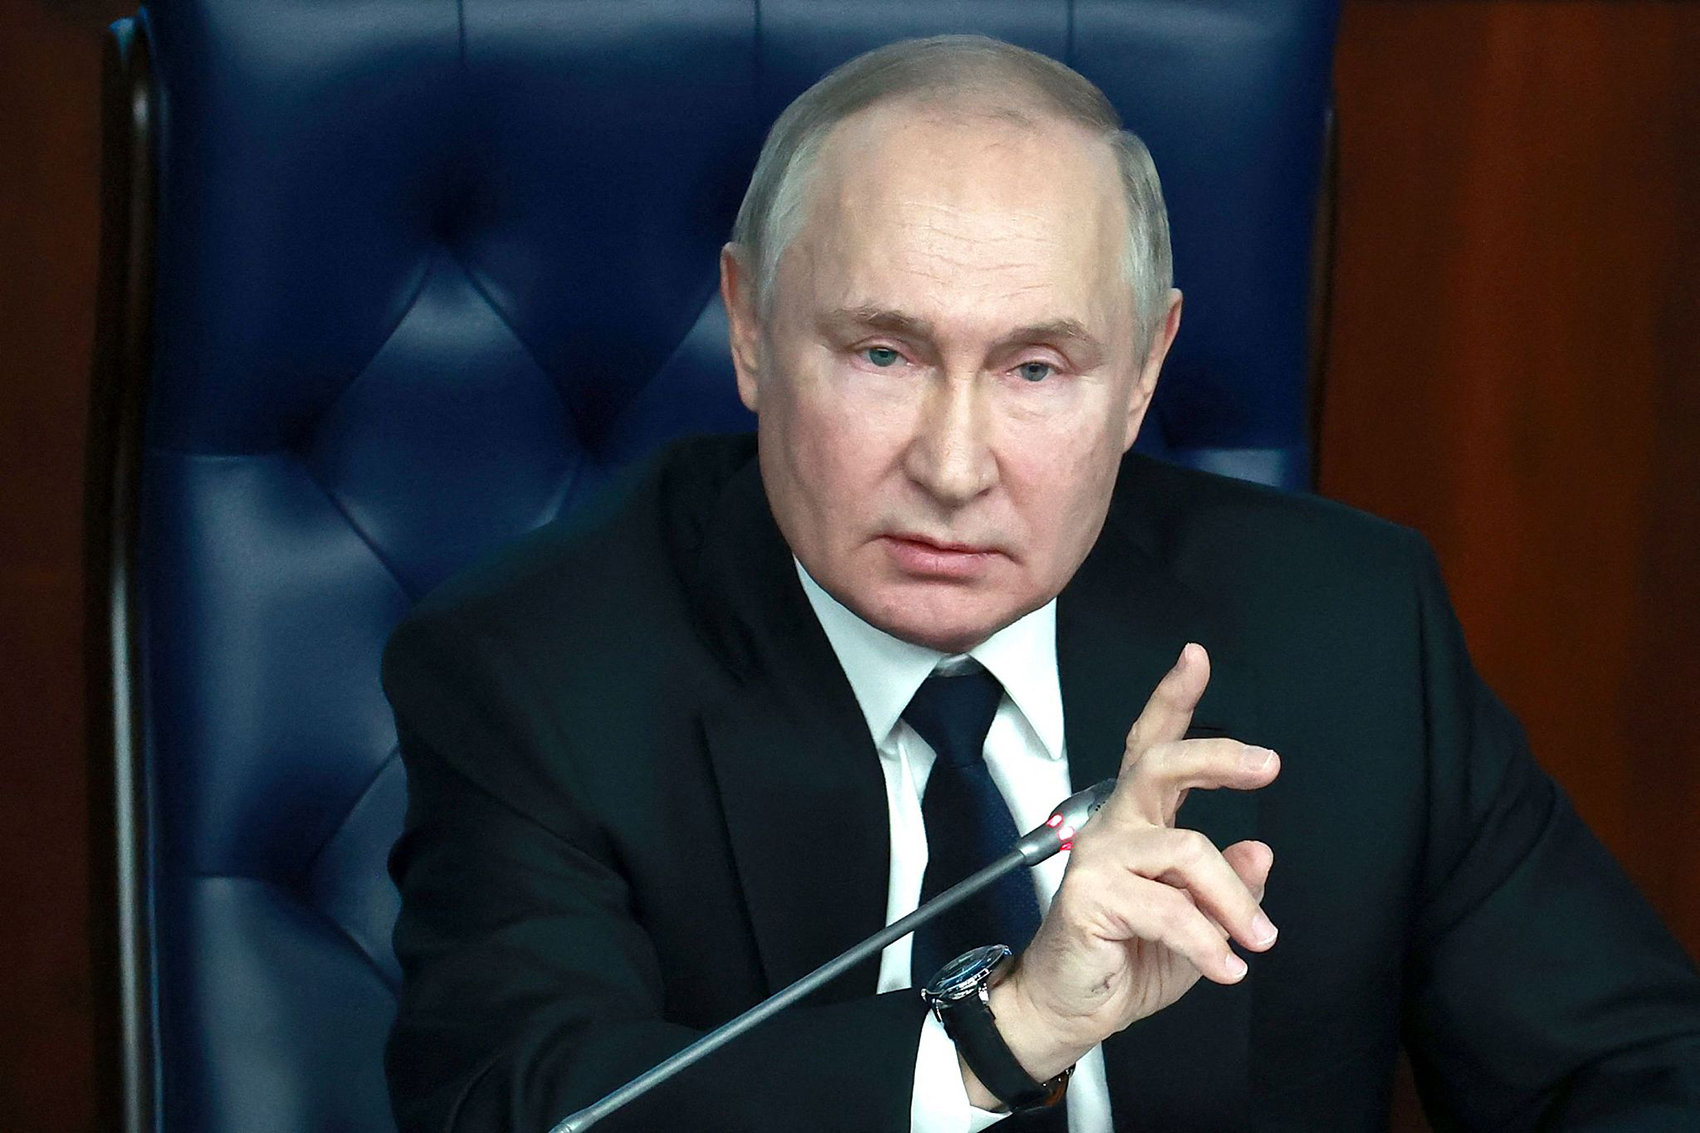 俄总统新闻秘书:普京未说明白发具体指代何人